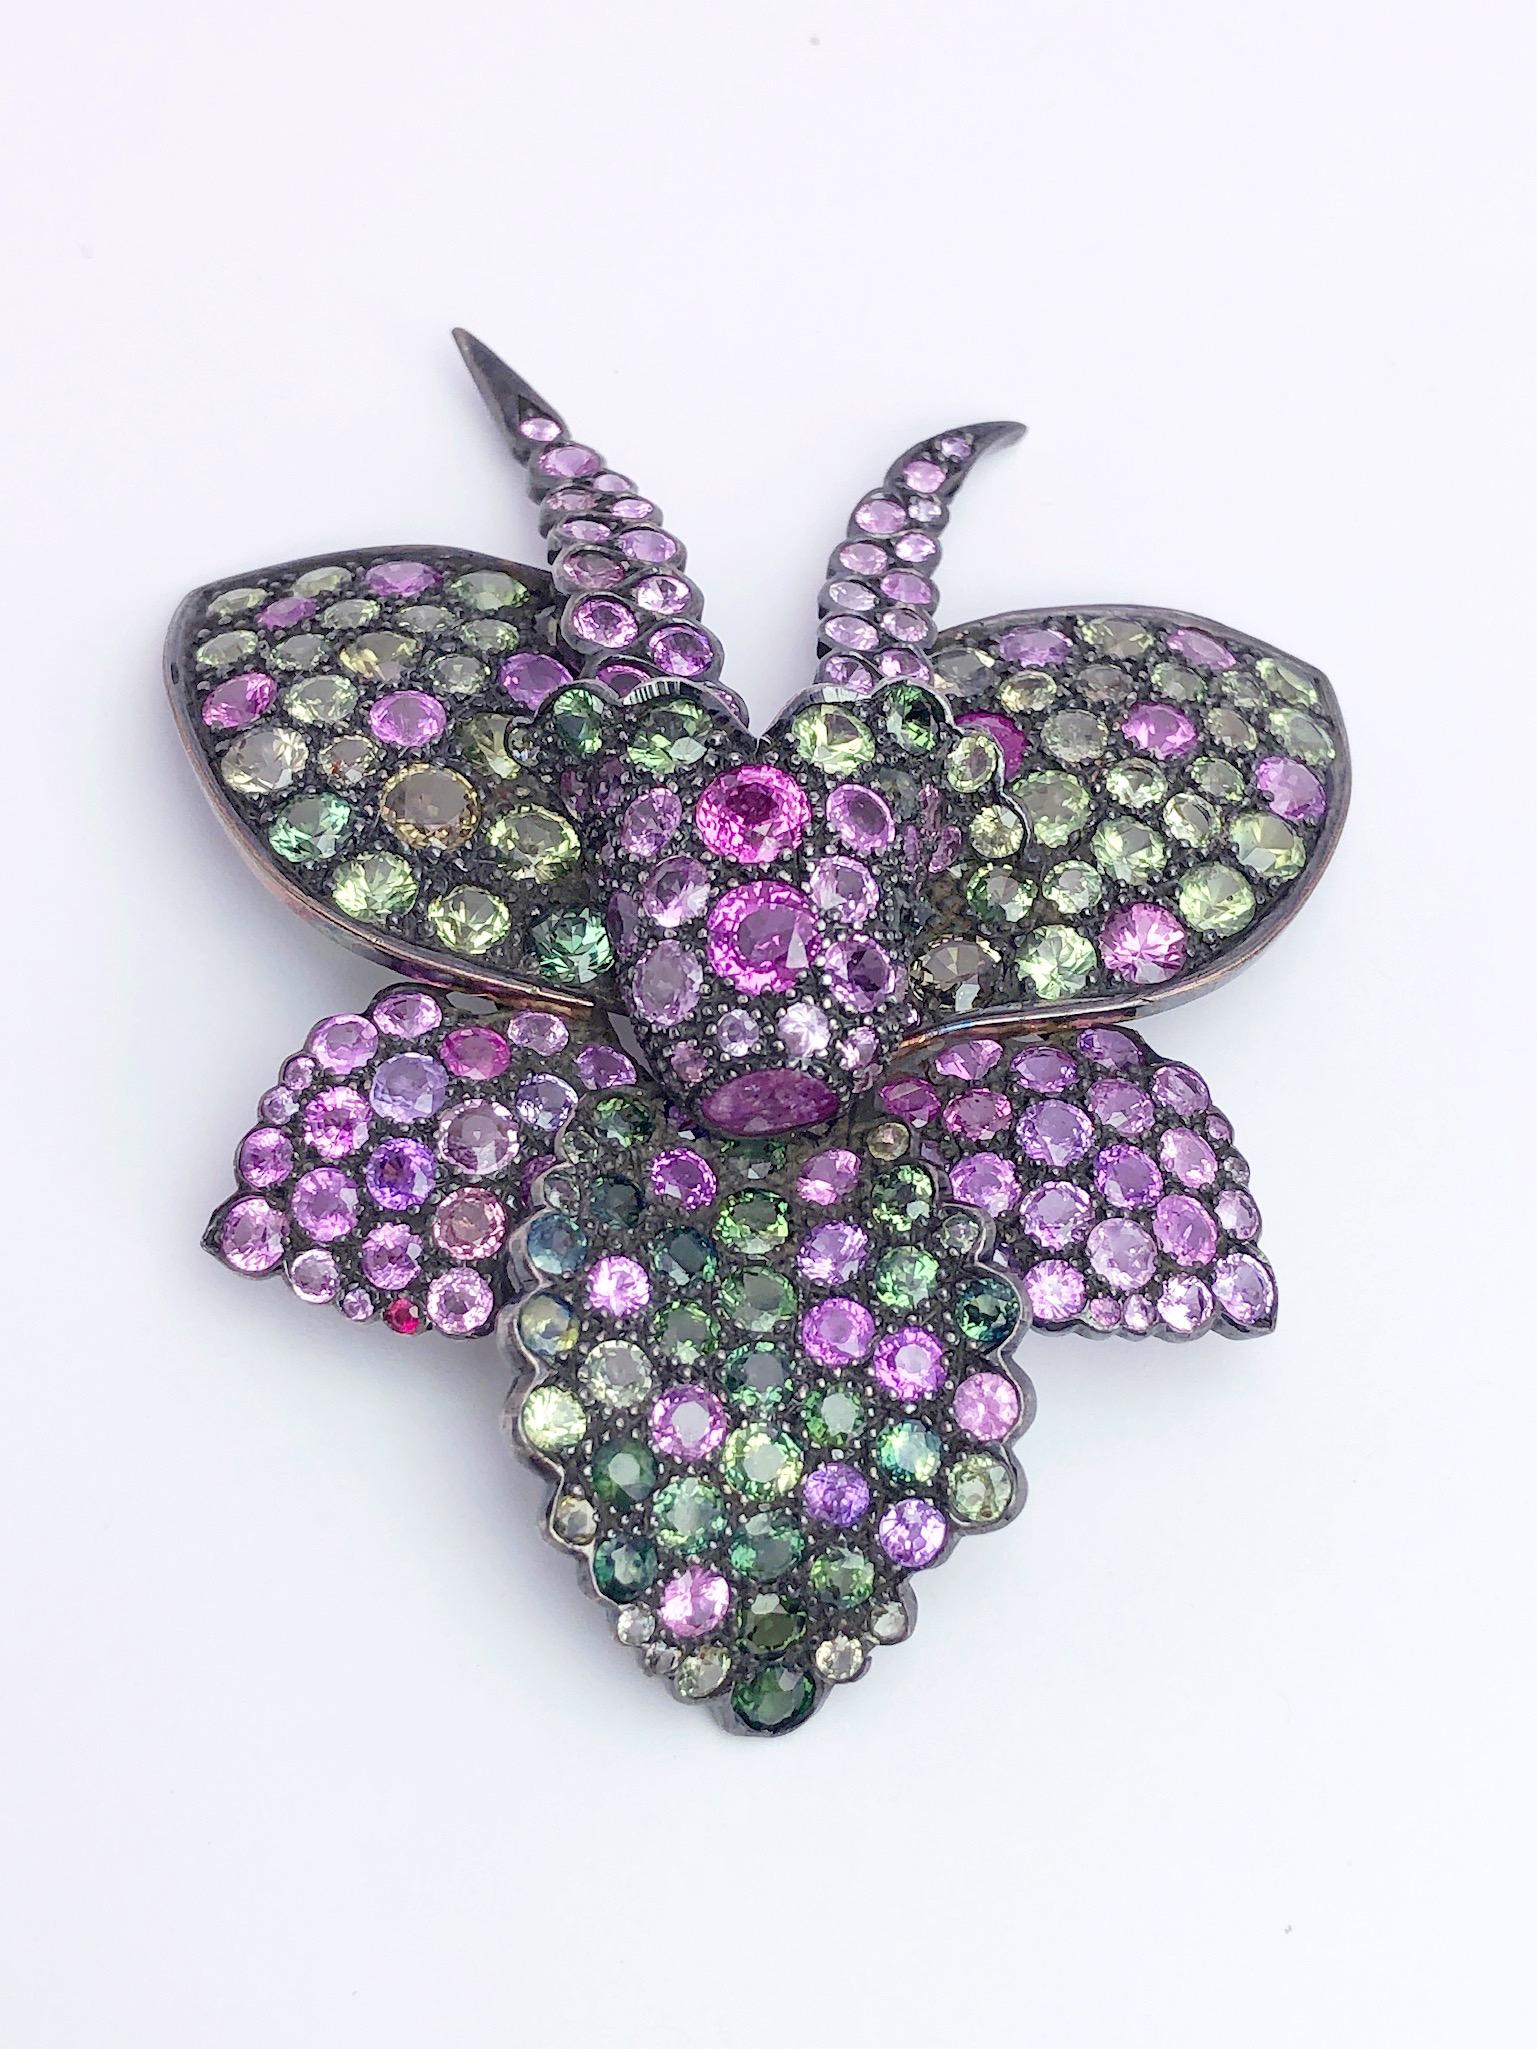 Une jolie broche orchidée magnifiquement sertie de saphirs dans les tons de rose, violet et vert. La combinaison des montures à griffes et à lunette donne de la profondeur à l'orchidée. La broche mesure 3